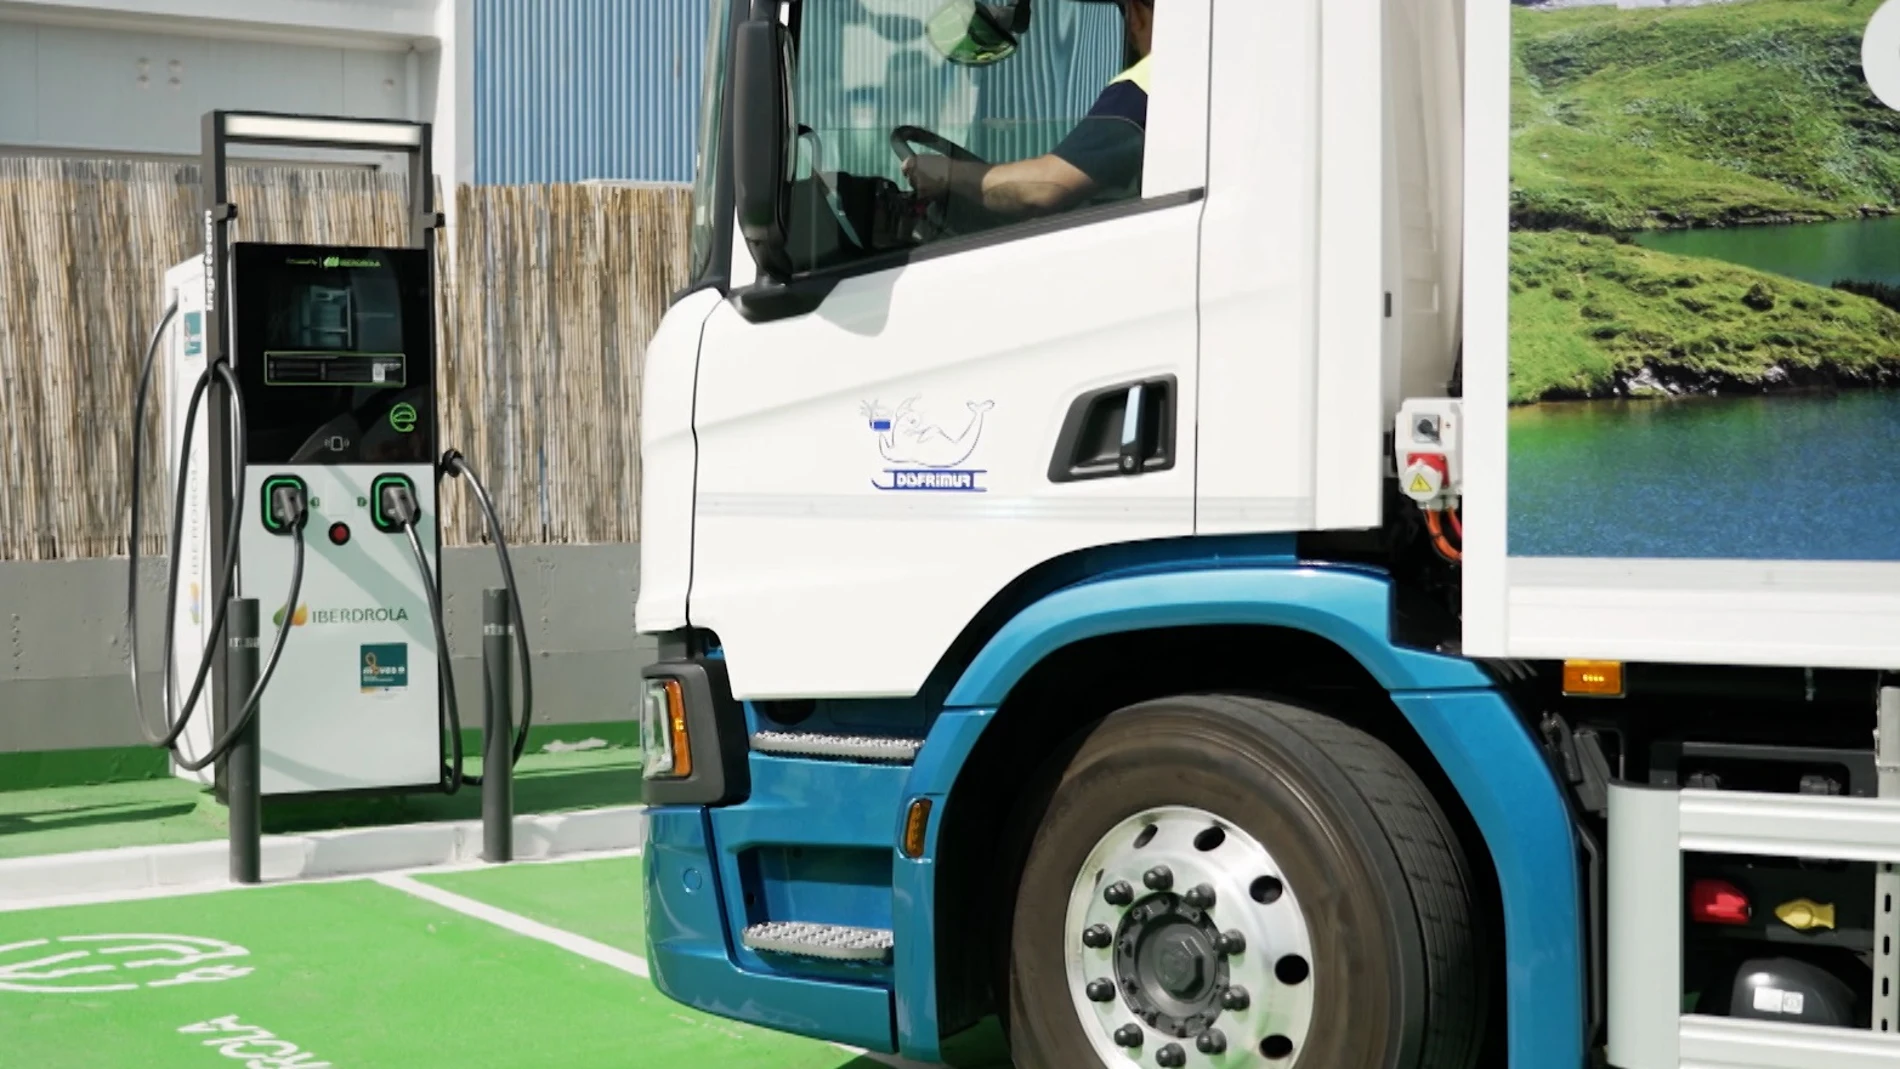 Iberdrola inaugura las primeras estaciones de recarga específicas de camiones. Cargarán a 180 kW en primera fase y a 1.000 kW en la segunda 